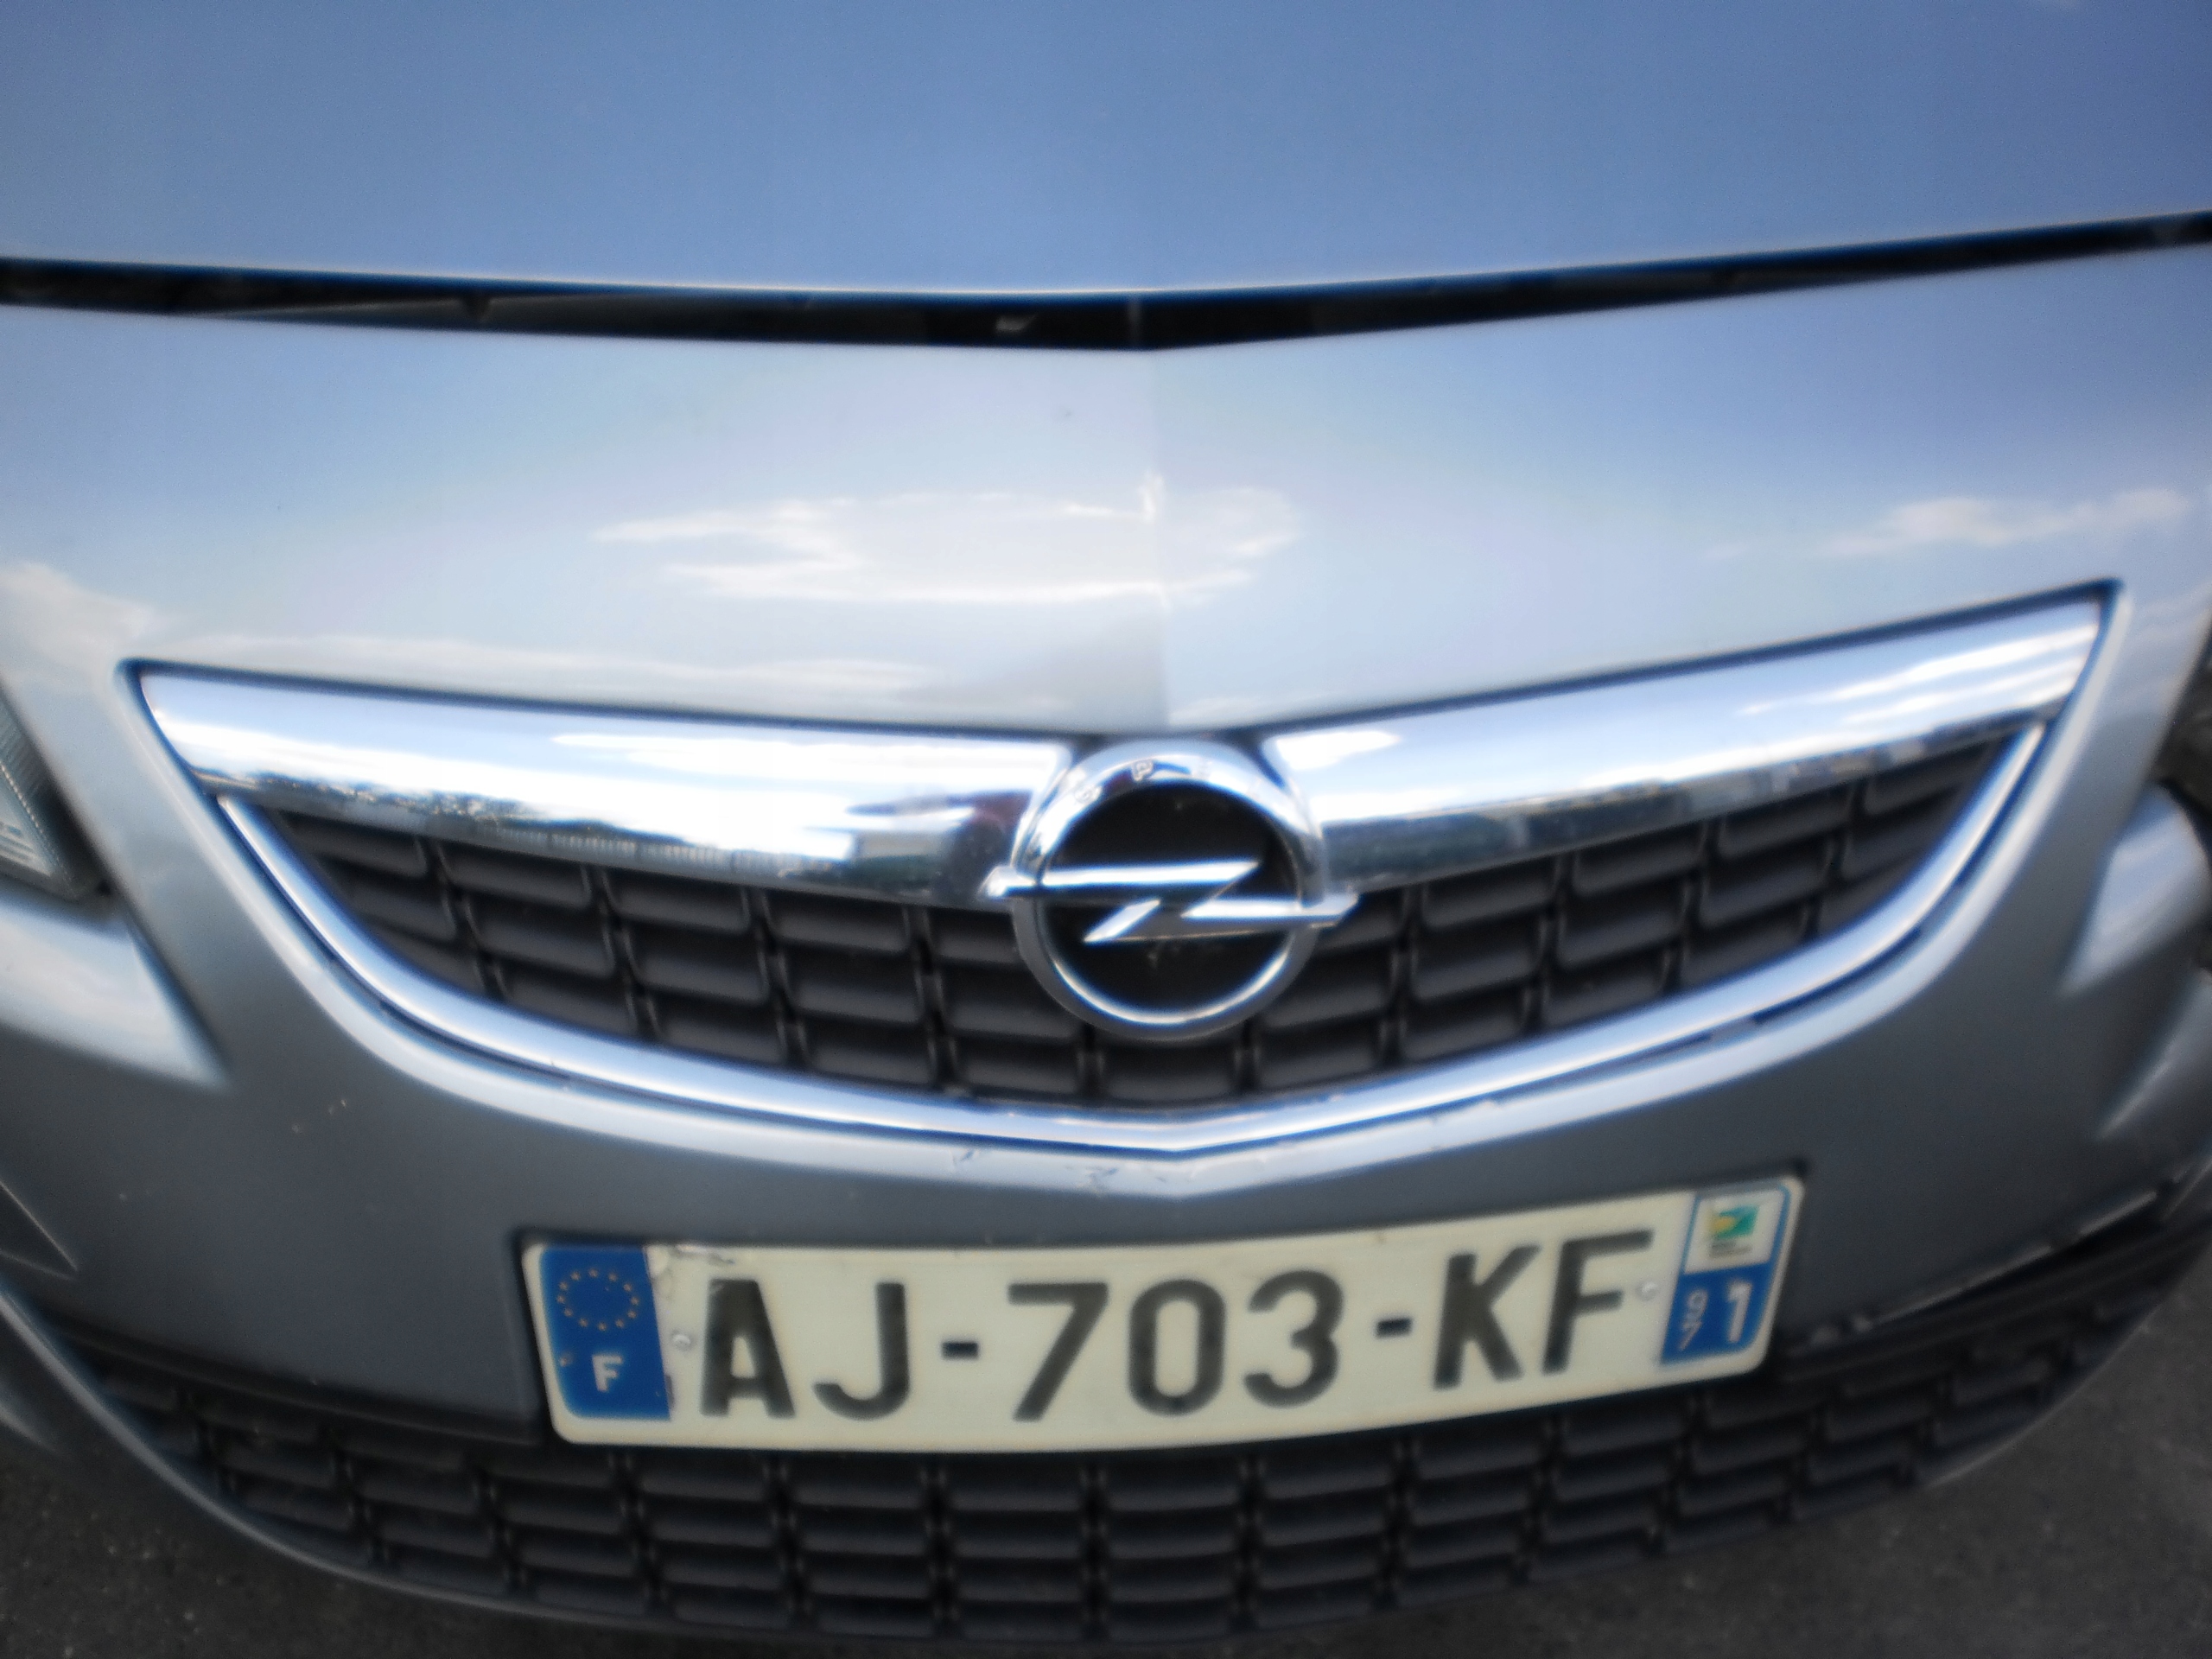 Opel Astra J grill